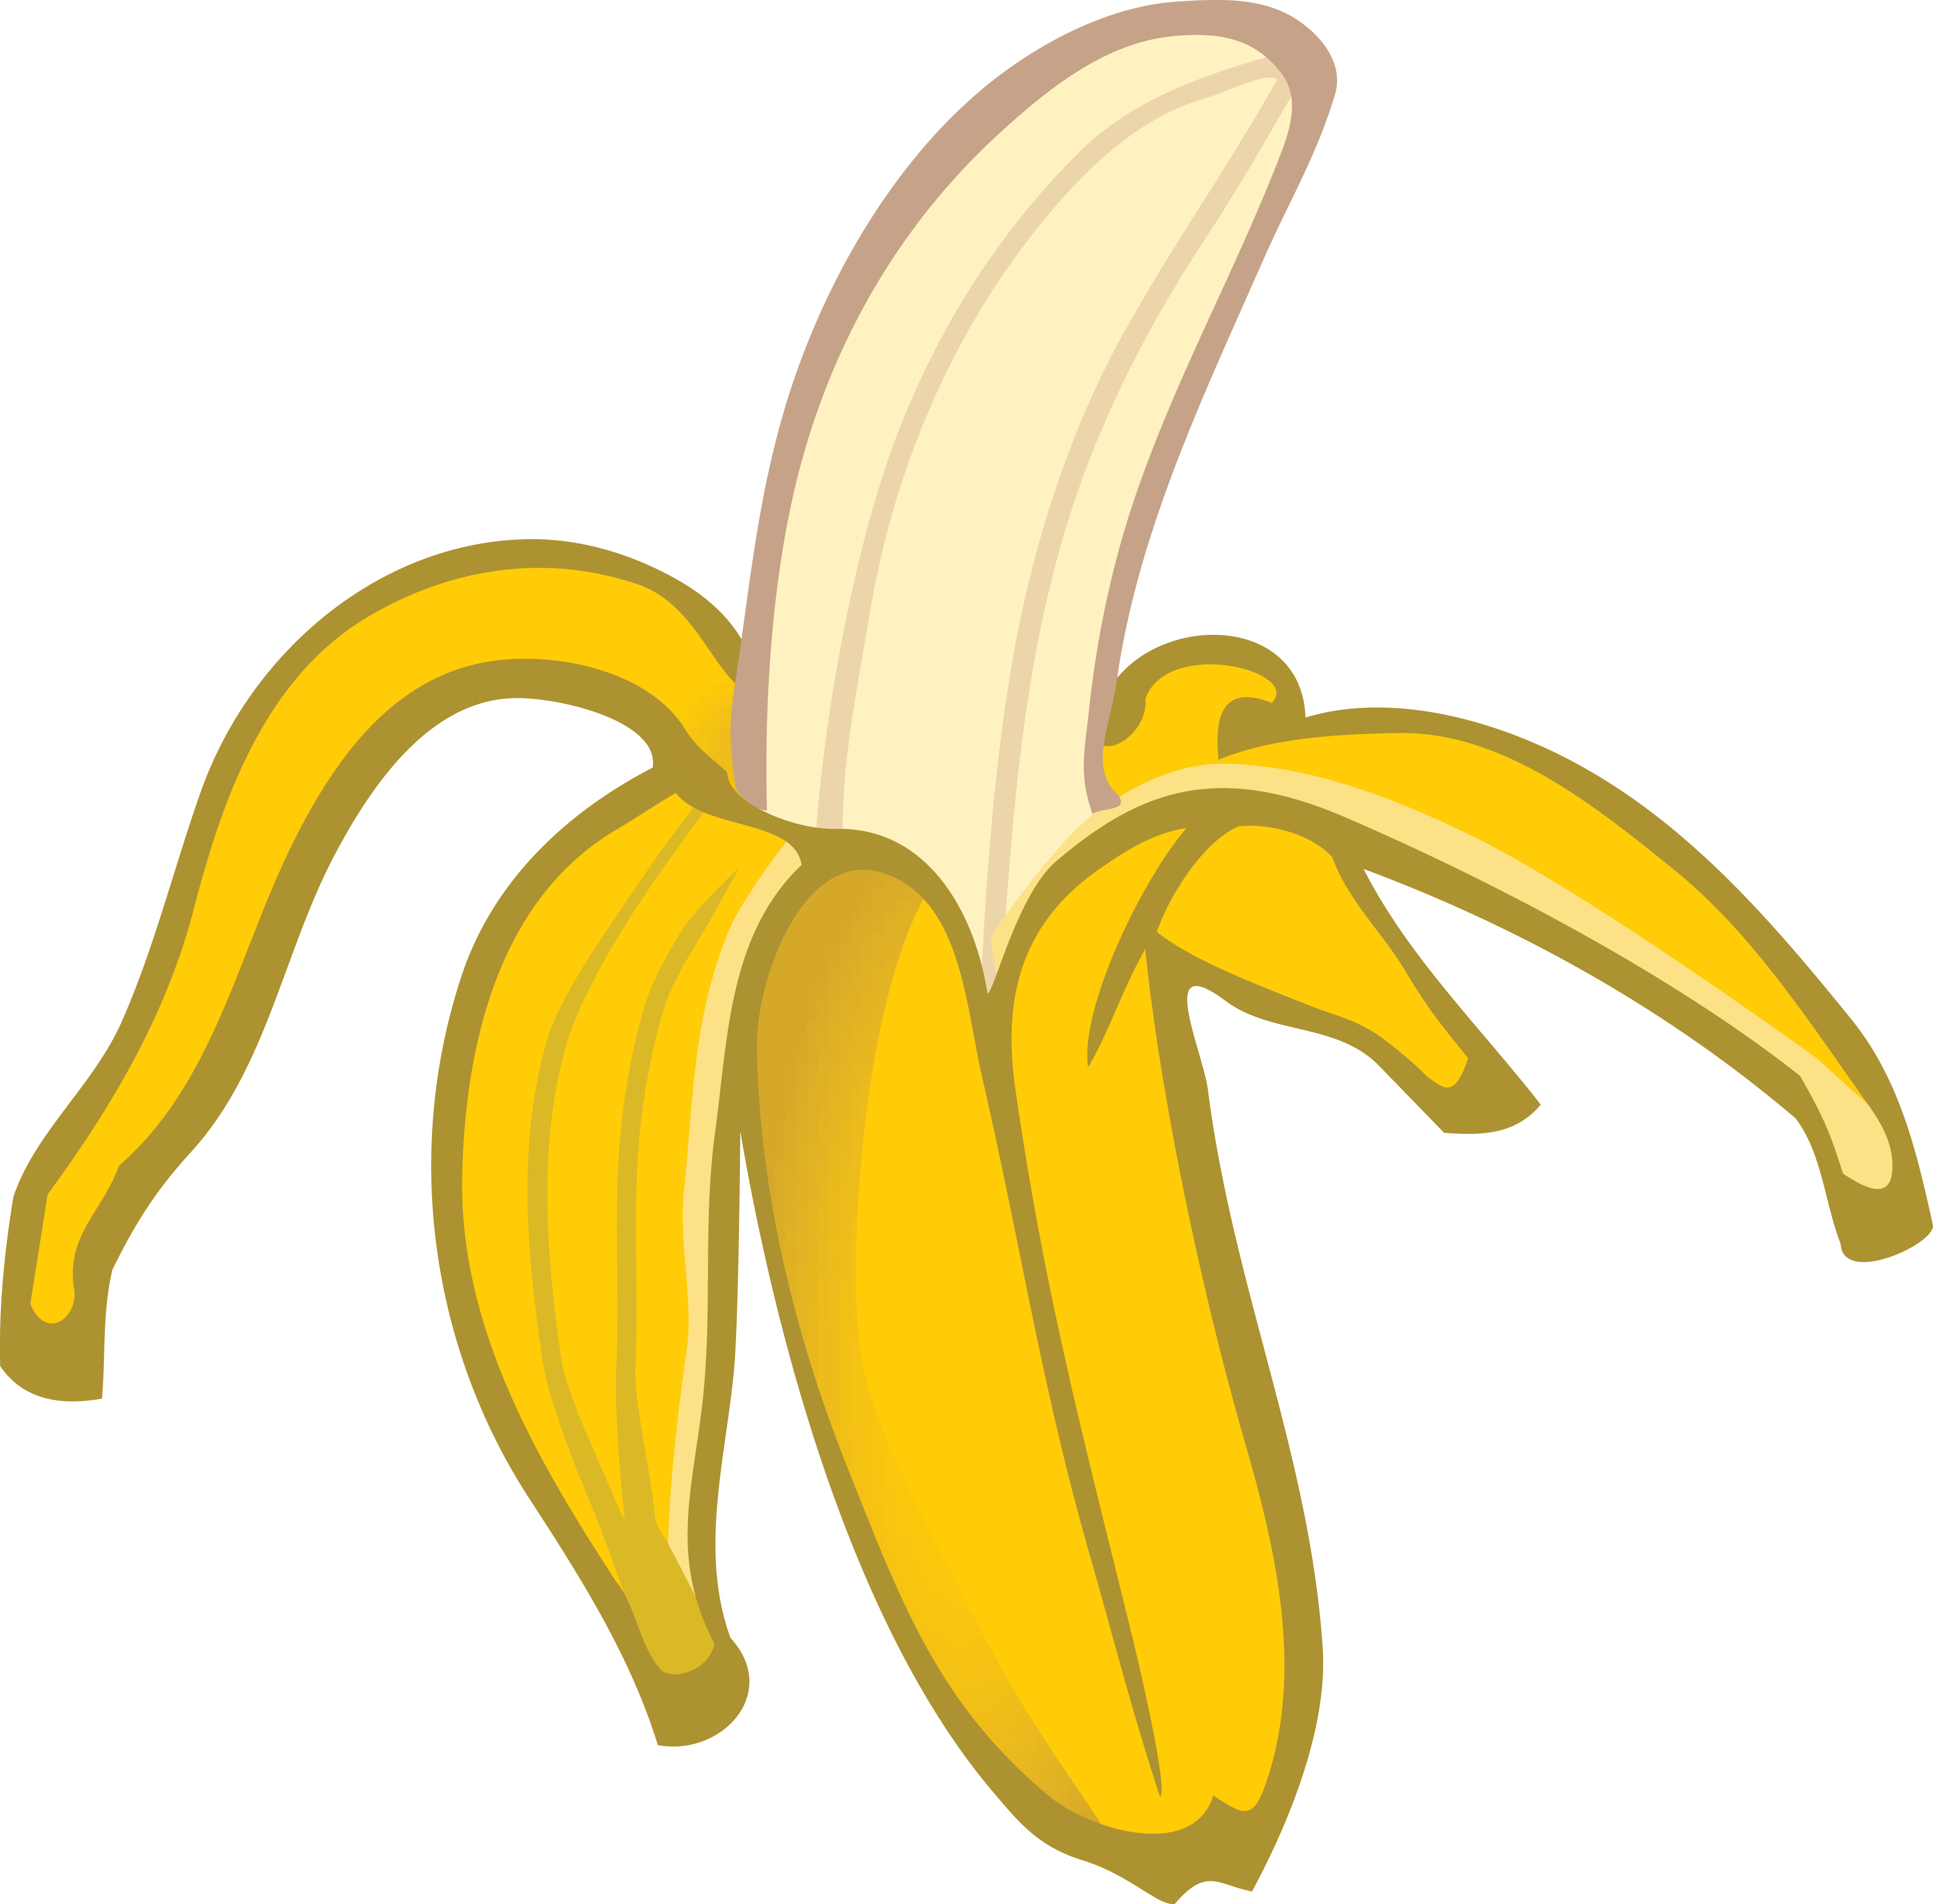 Banana Clipart-Clipartlook.co - Banana Clipart